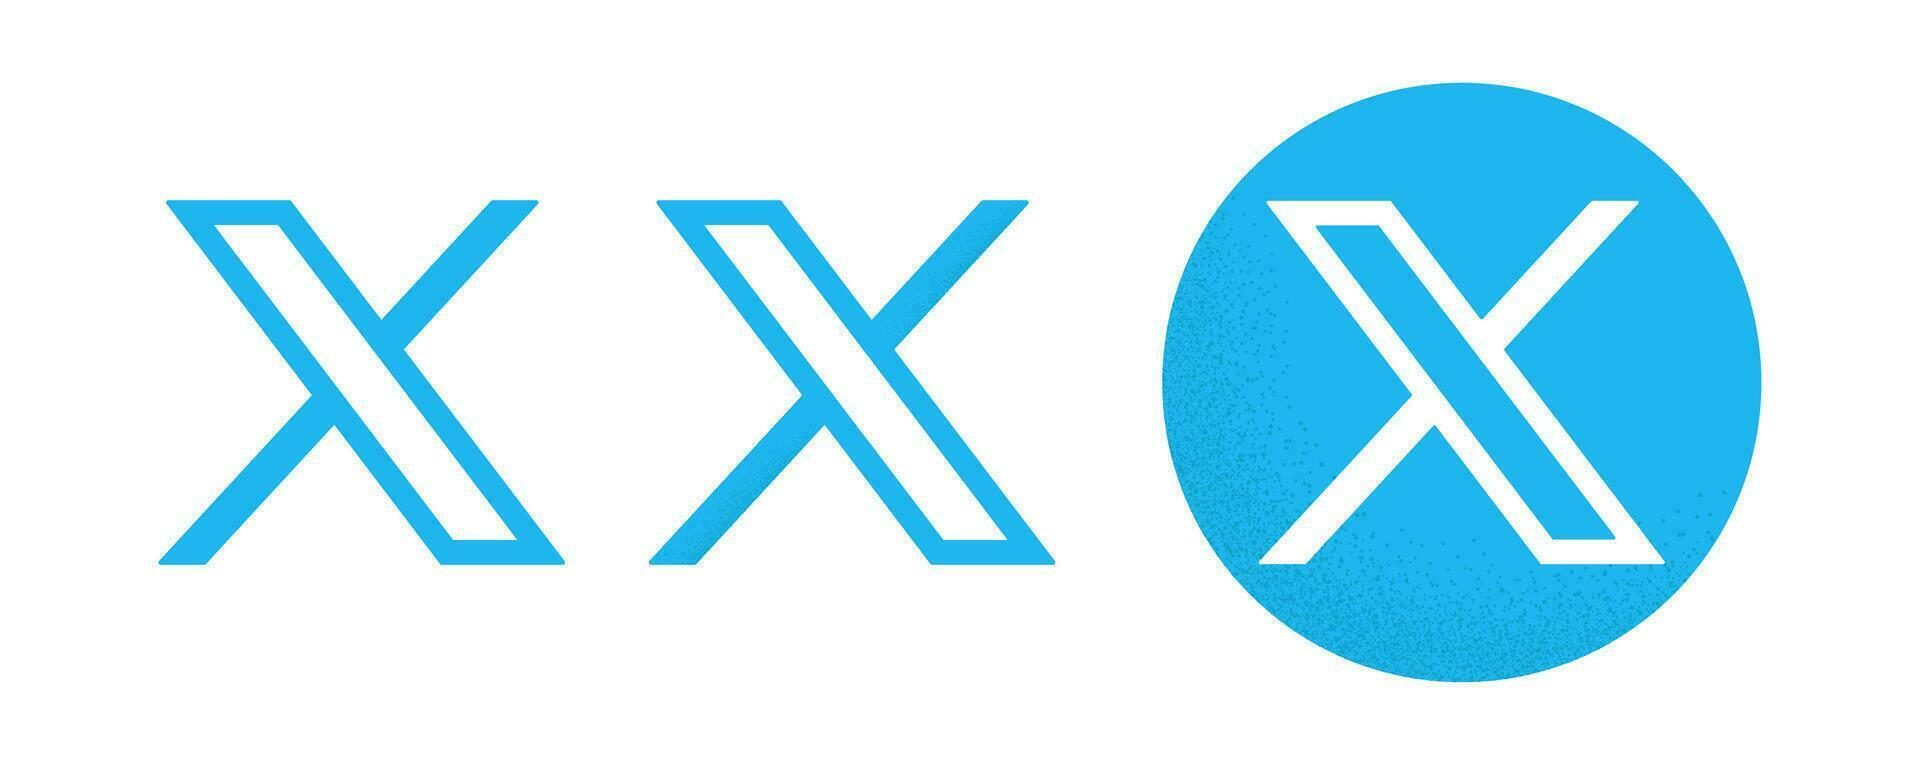 Twitter blå ny logotyper med spannmål textur vektor